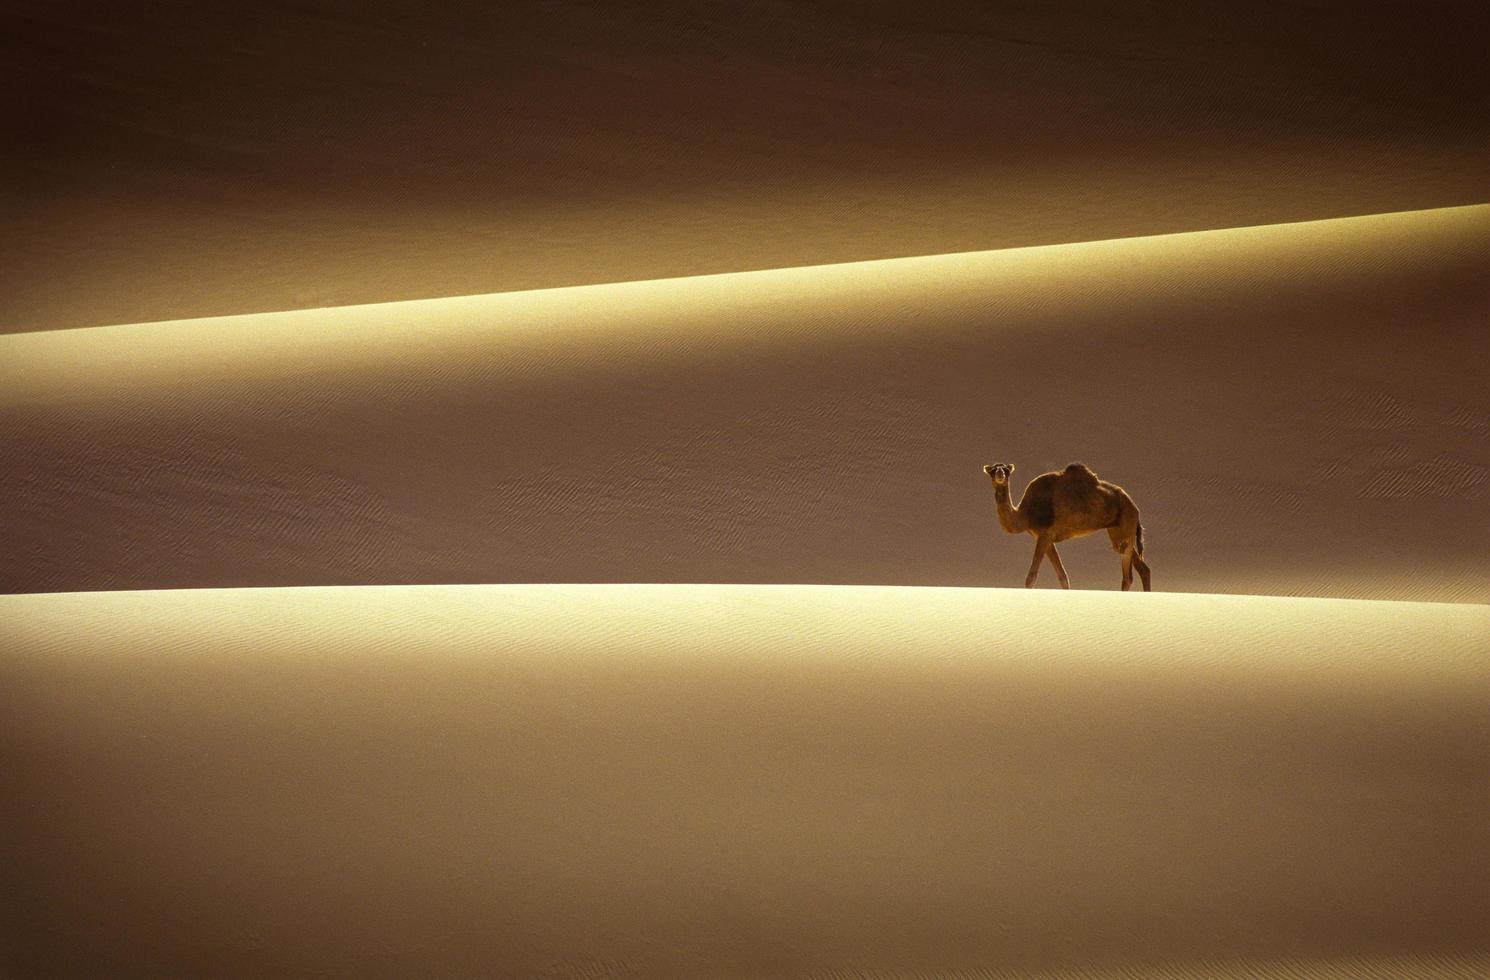 Tassili n'Ajjer desert, National Park, Algeria - Africa photo